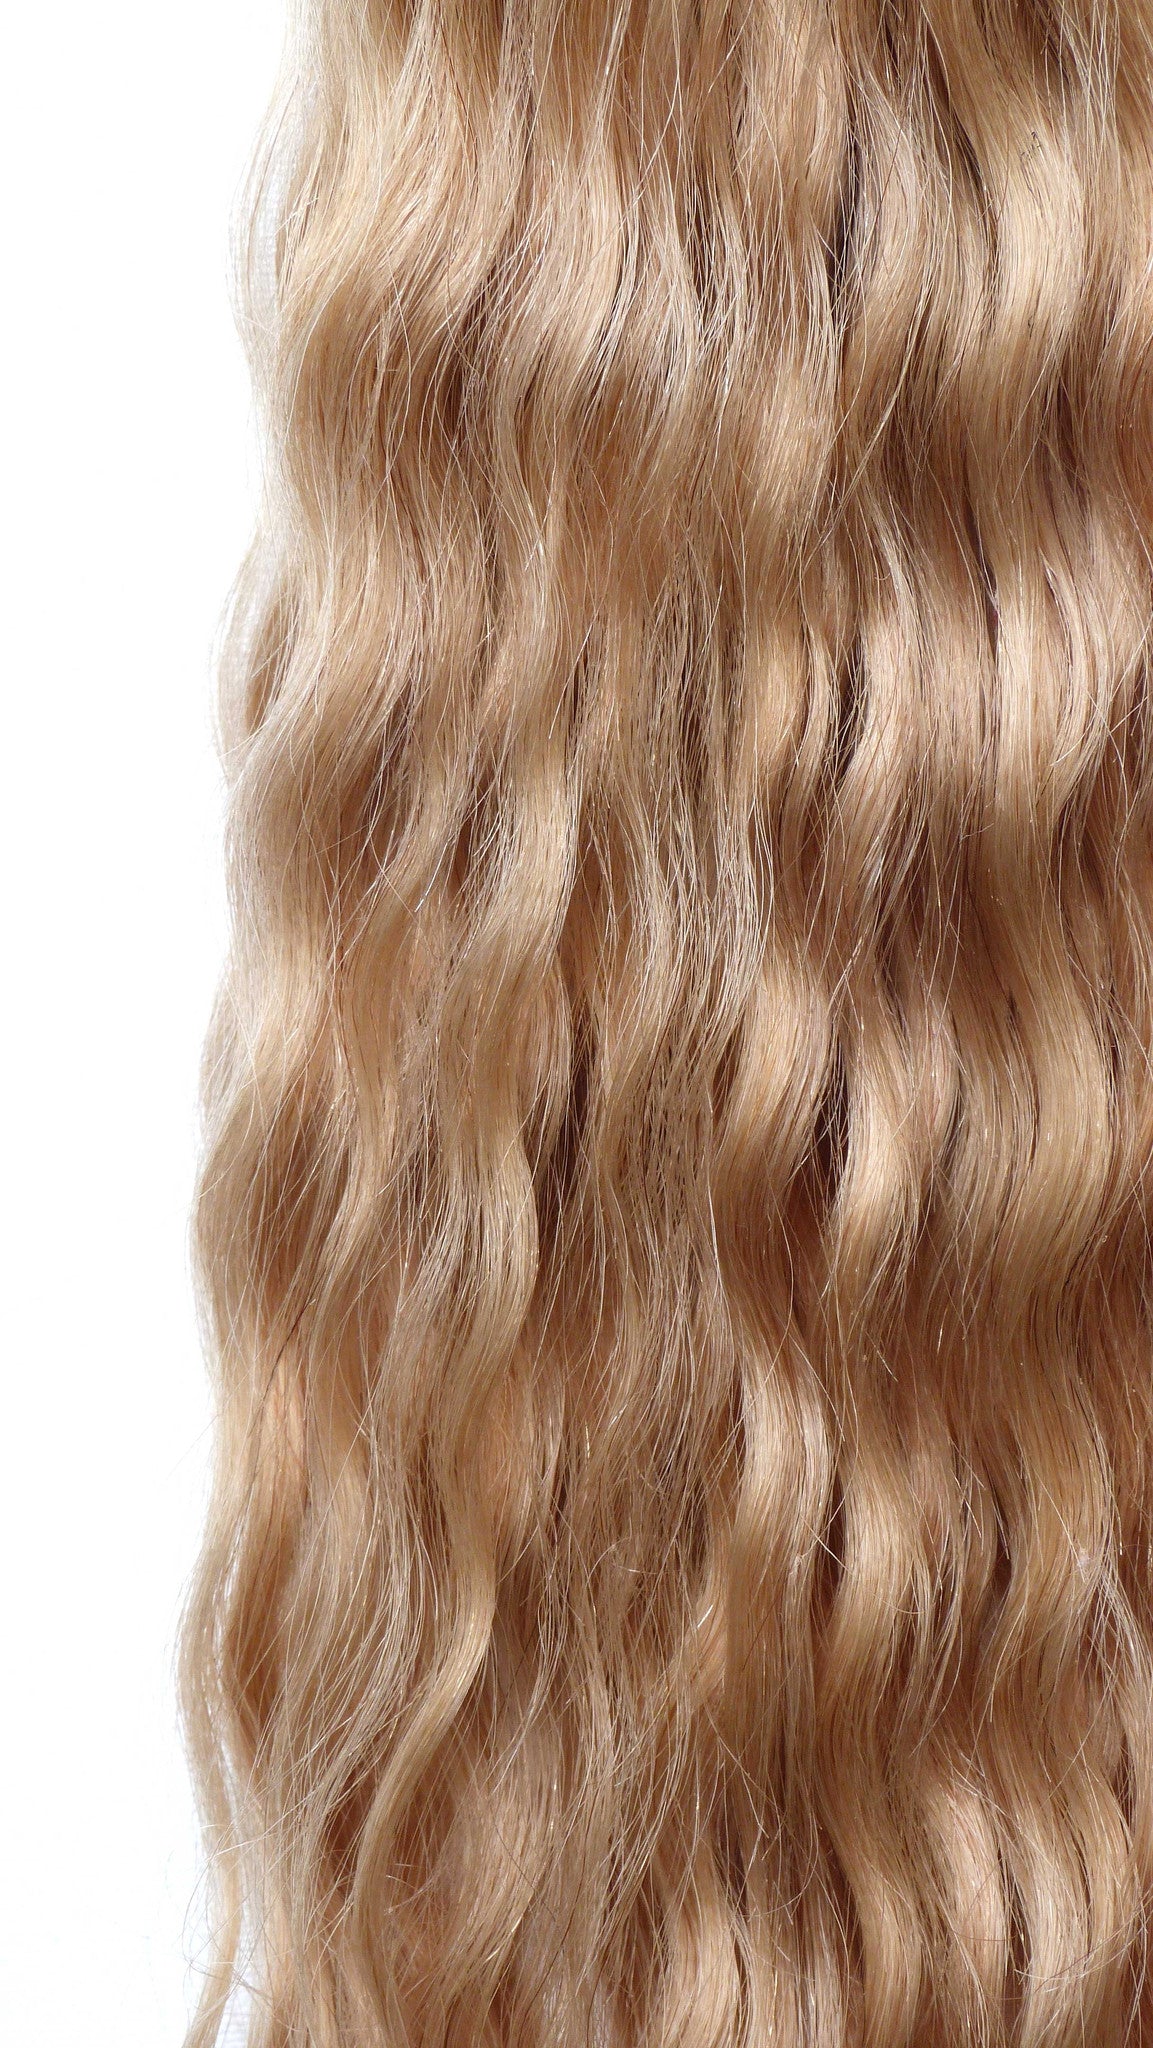 תוספות שיער אנושי בתולה אירופאית - תוספות מיקרו לולאה-שיער ויופי בתולה, תוספות השיער הטובות ביותר, שיער אנושי בתול אמיתי.